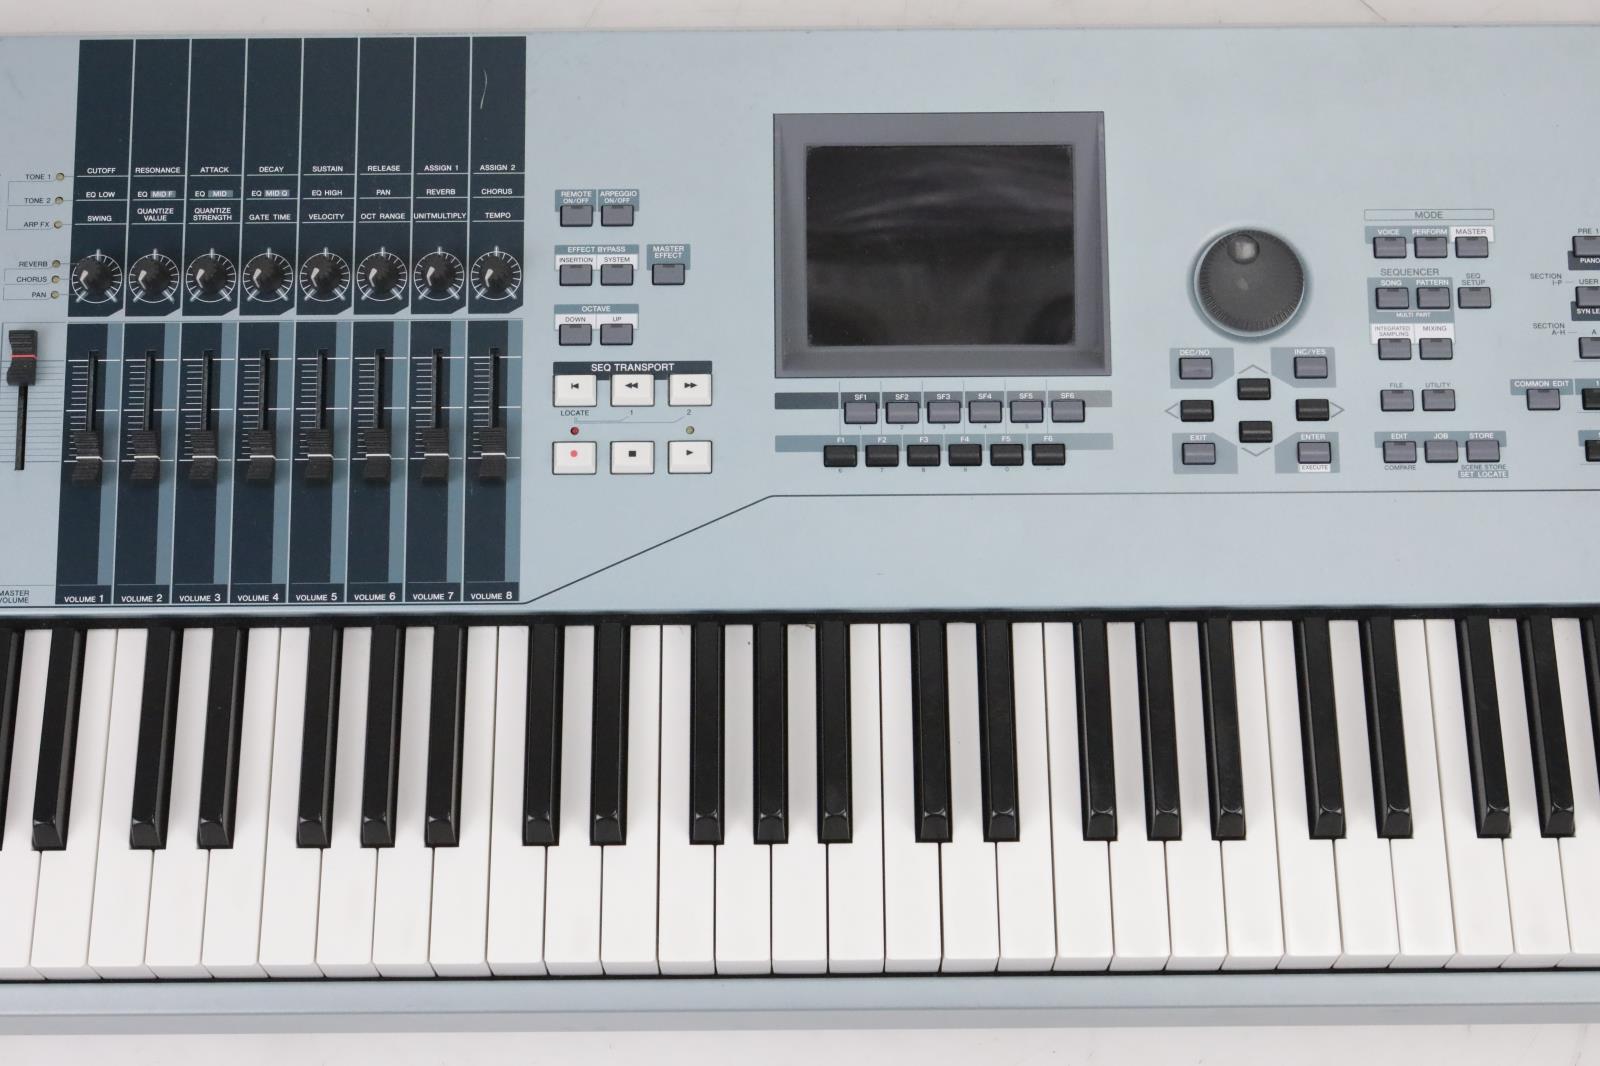 keyboard maestro 8 serial number